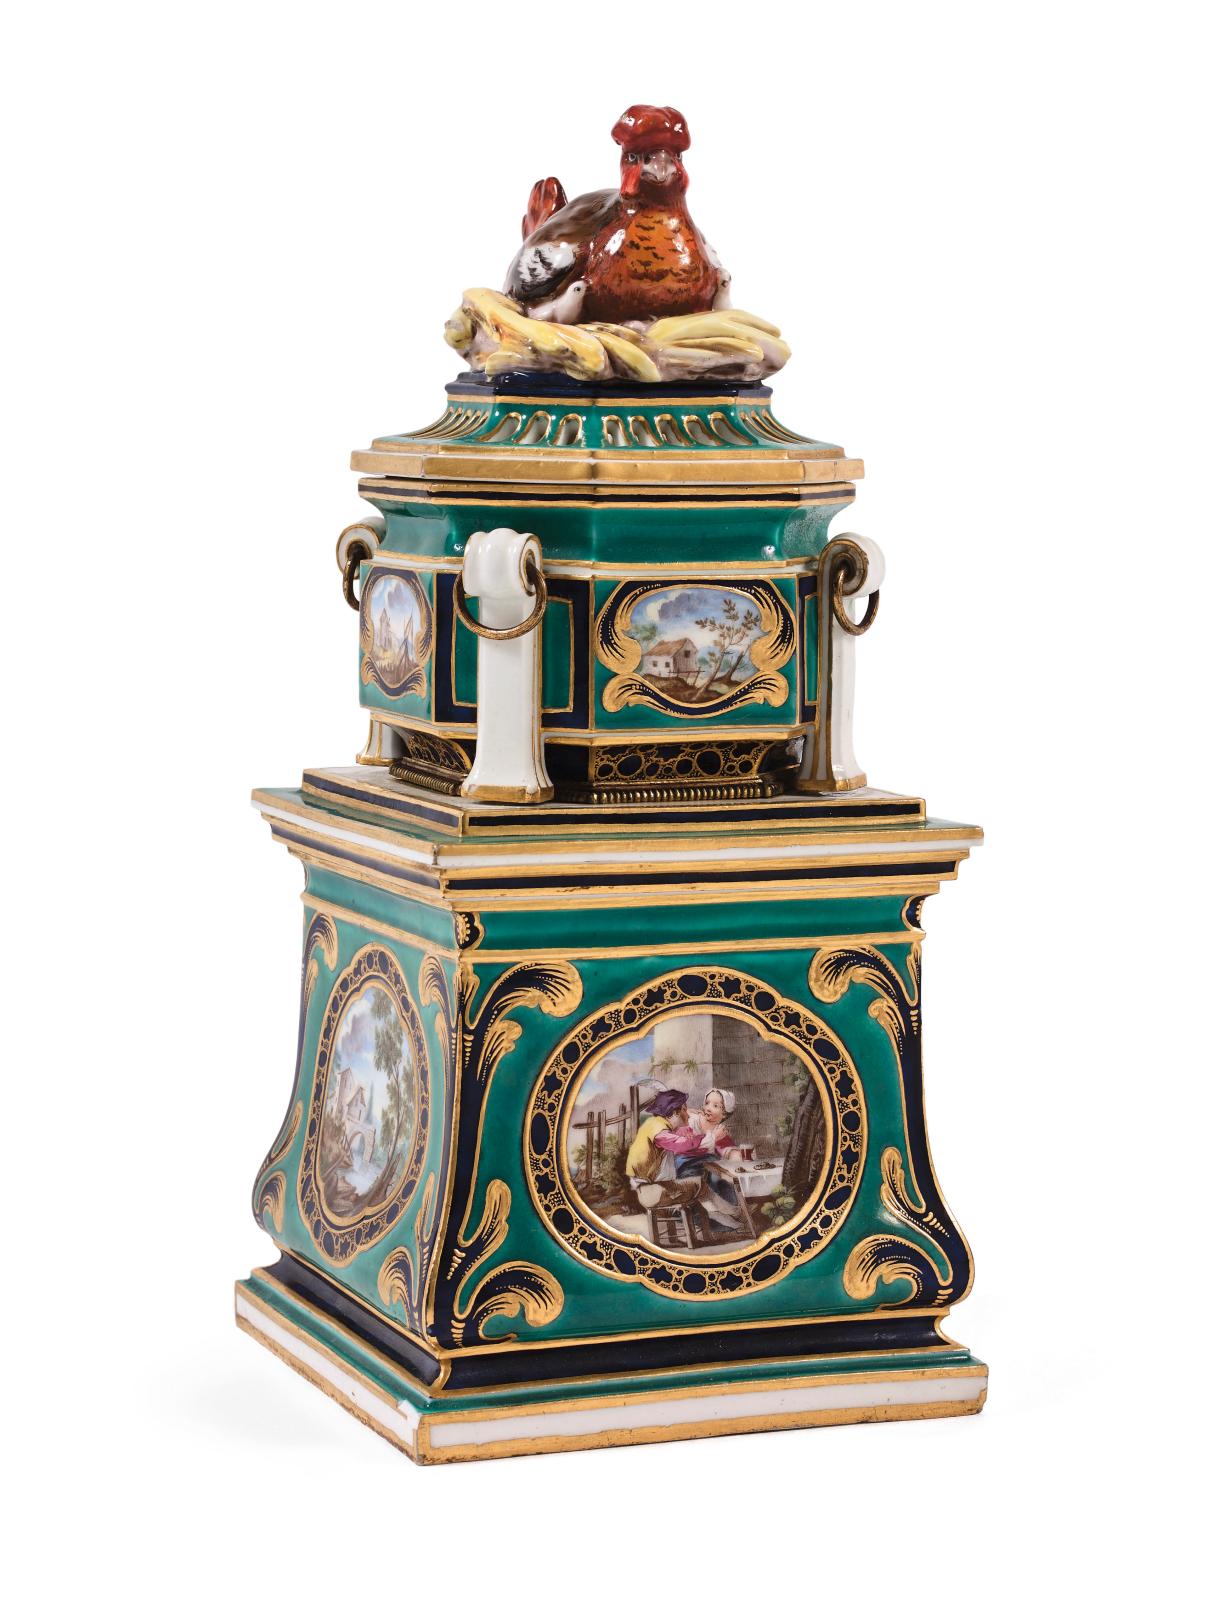 Trois autres veilleuses en porcelaine de Sèvres, d’un modèle proche, sont connus – dont l’une à la Wallace Collection (Londres), une autre